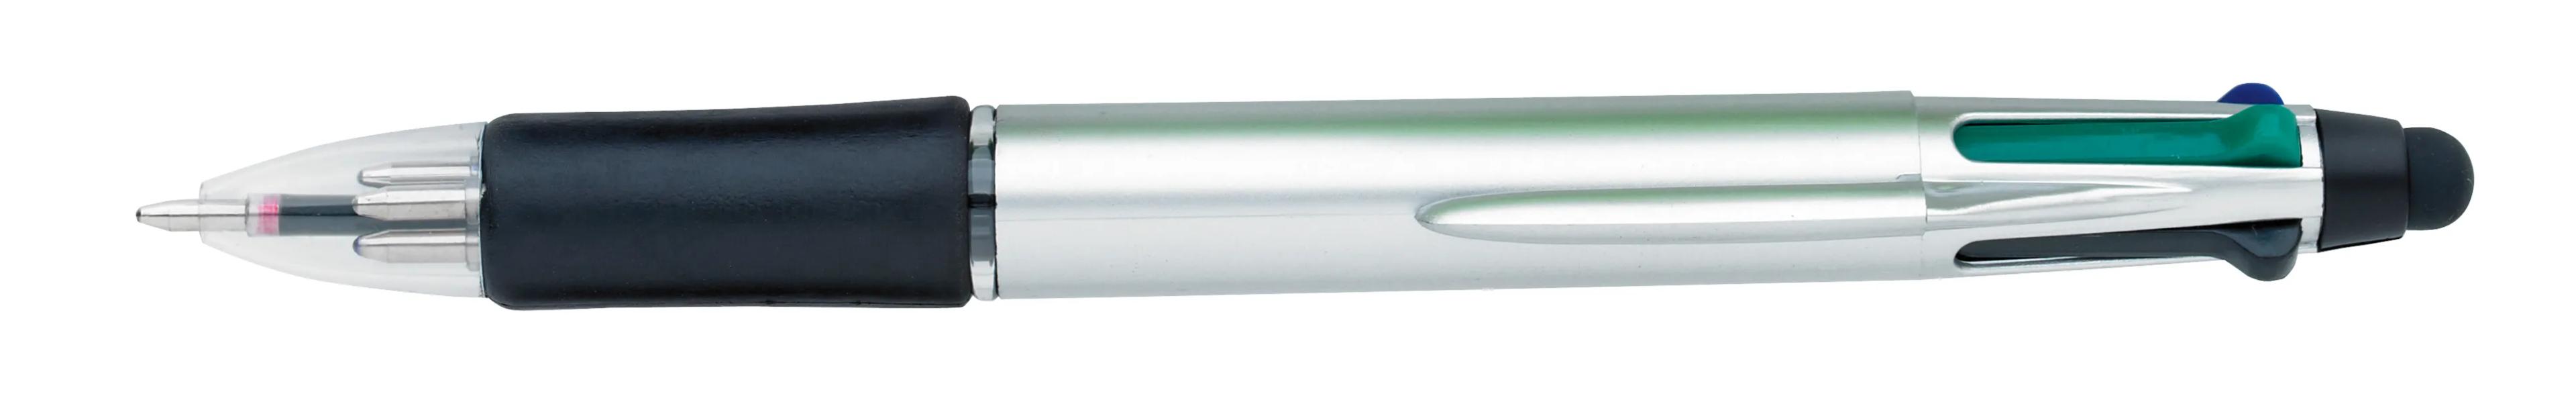 Orbitor Metallic Stylus Pen 3 of 56